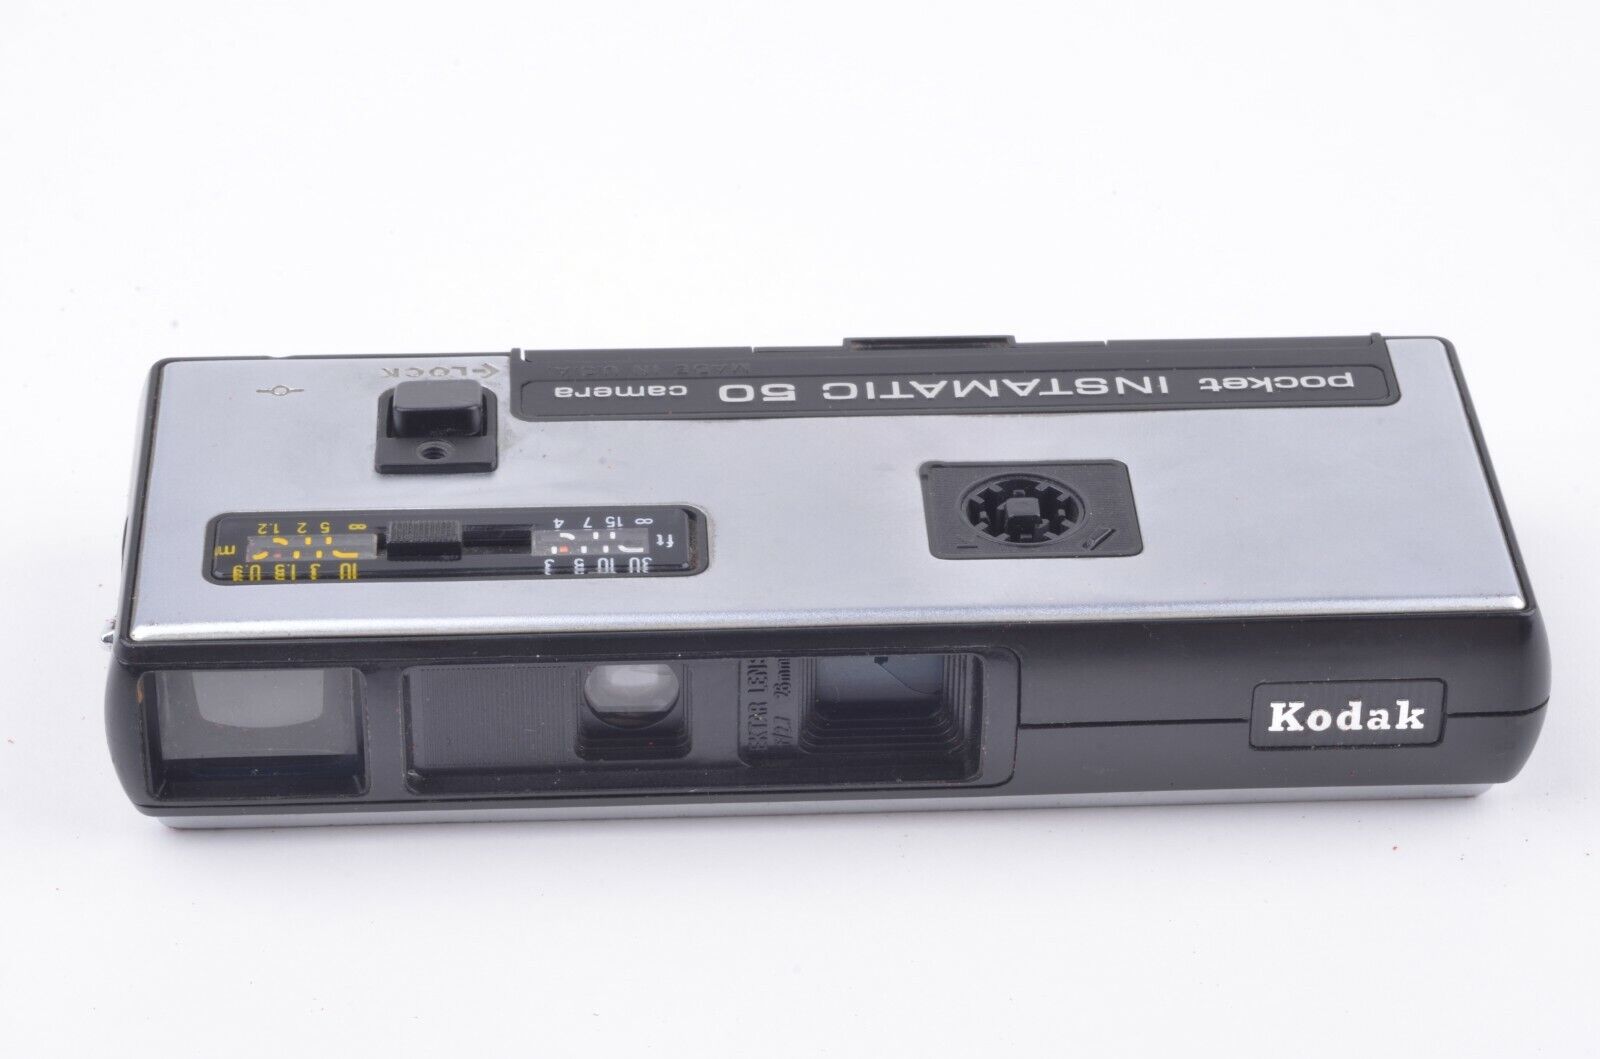 Kodak Instamatic camera turns 50